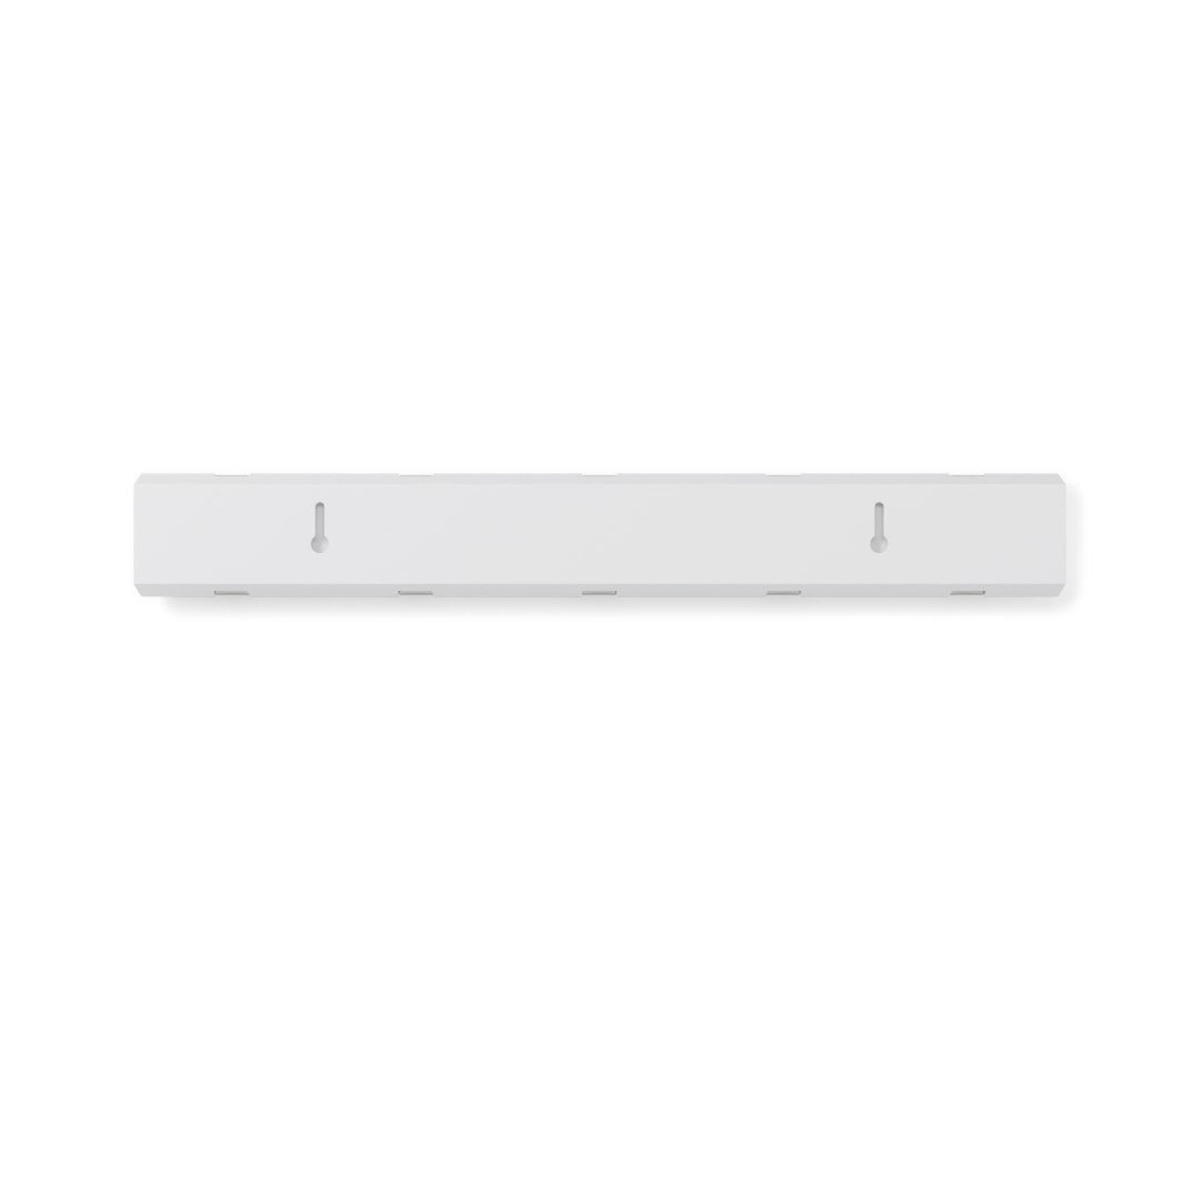 Förvara - Hook Rack, UMBRA FLIP 5 HOOK, 51 x H 6,5 cm, White / Silver